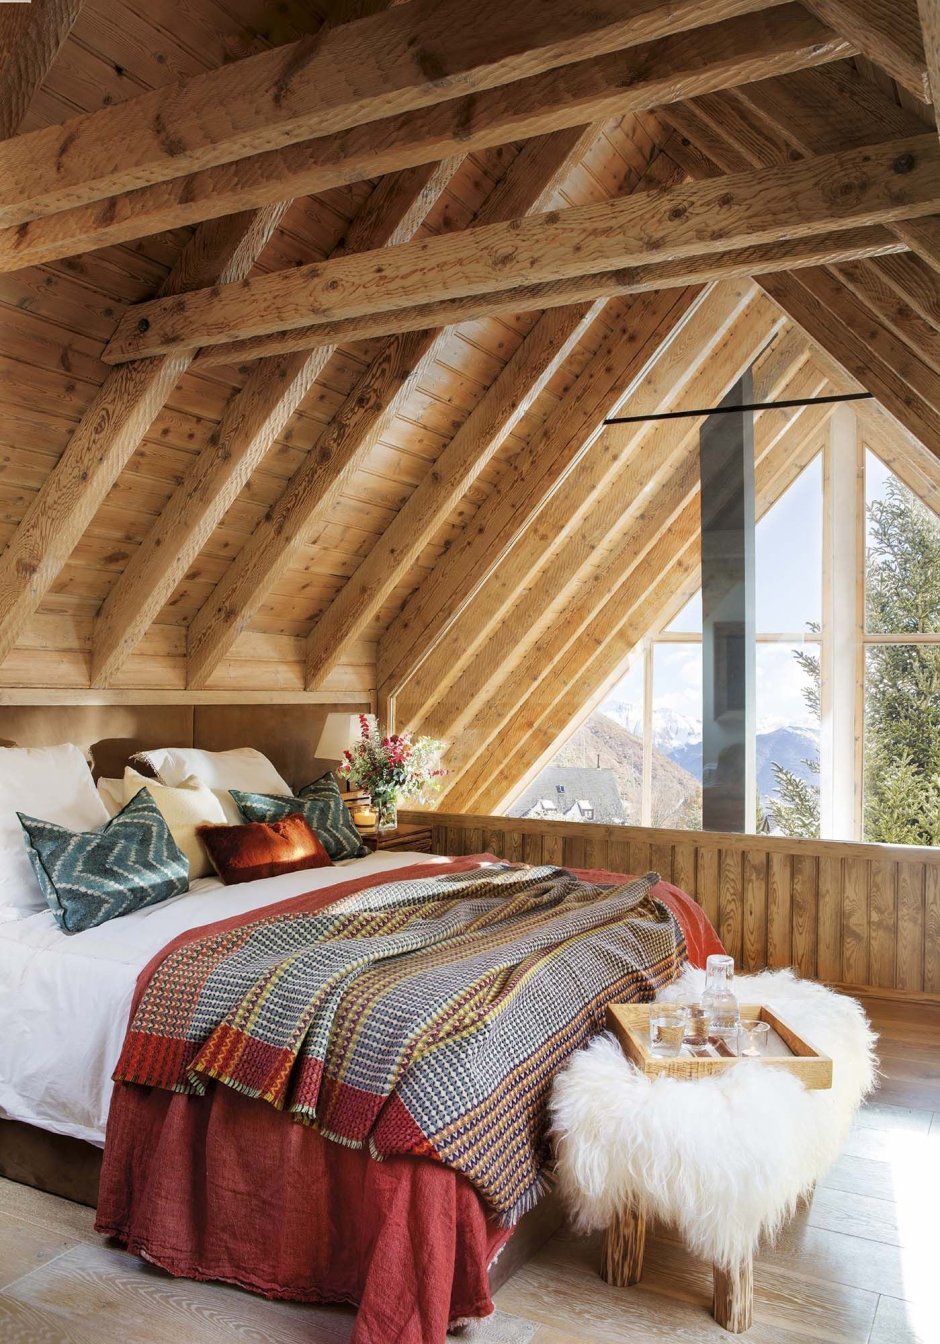 Спальня в деревянной мансарде